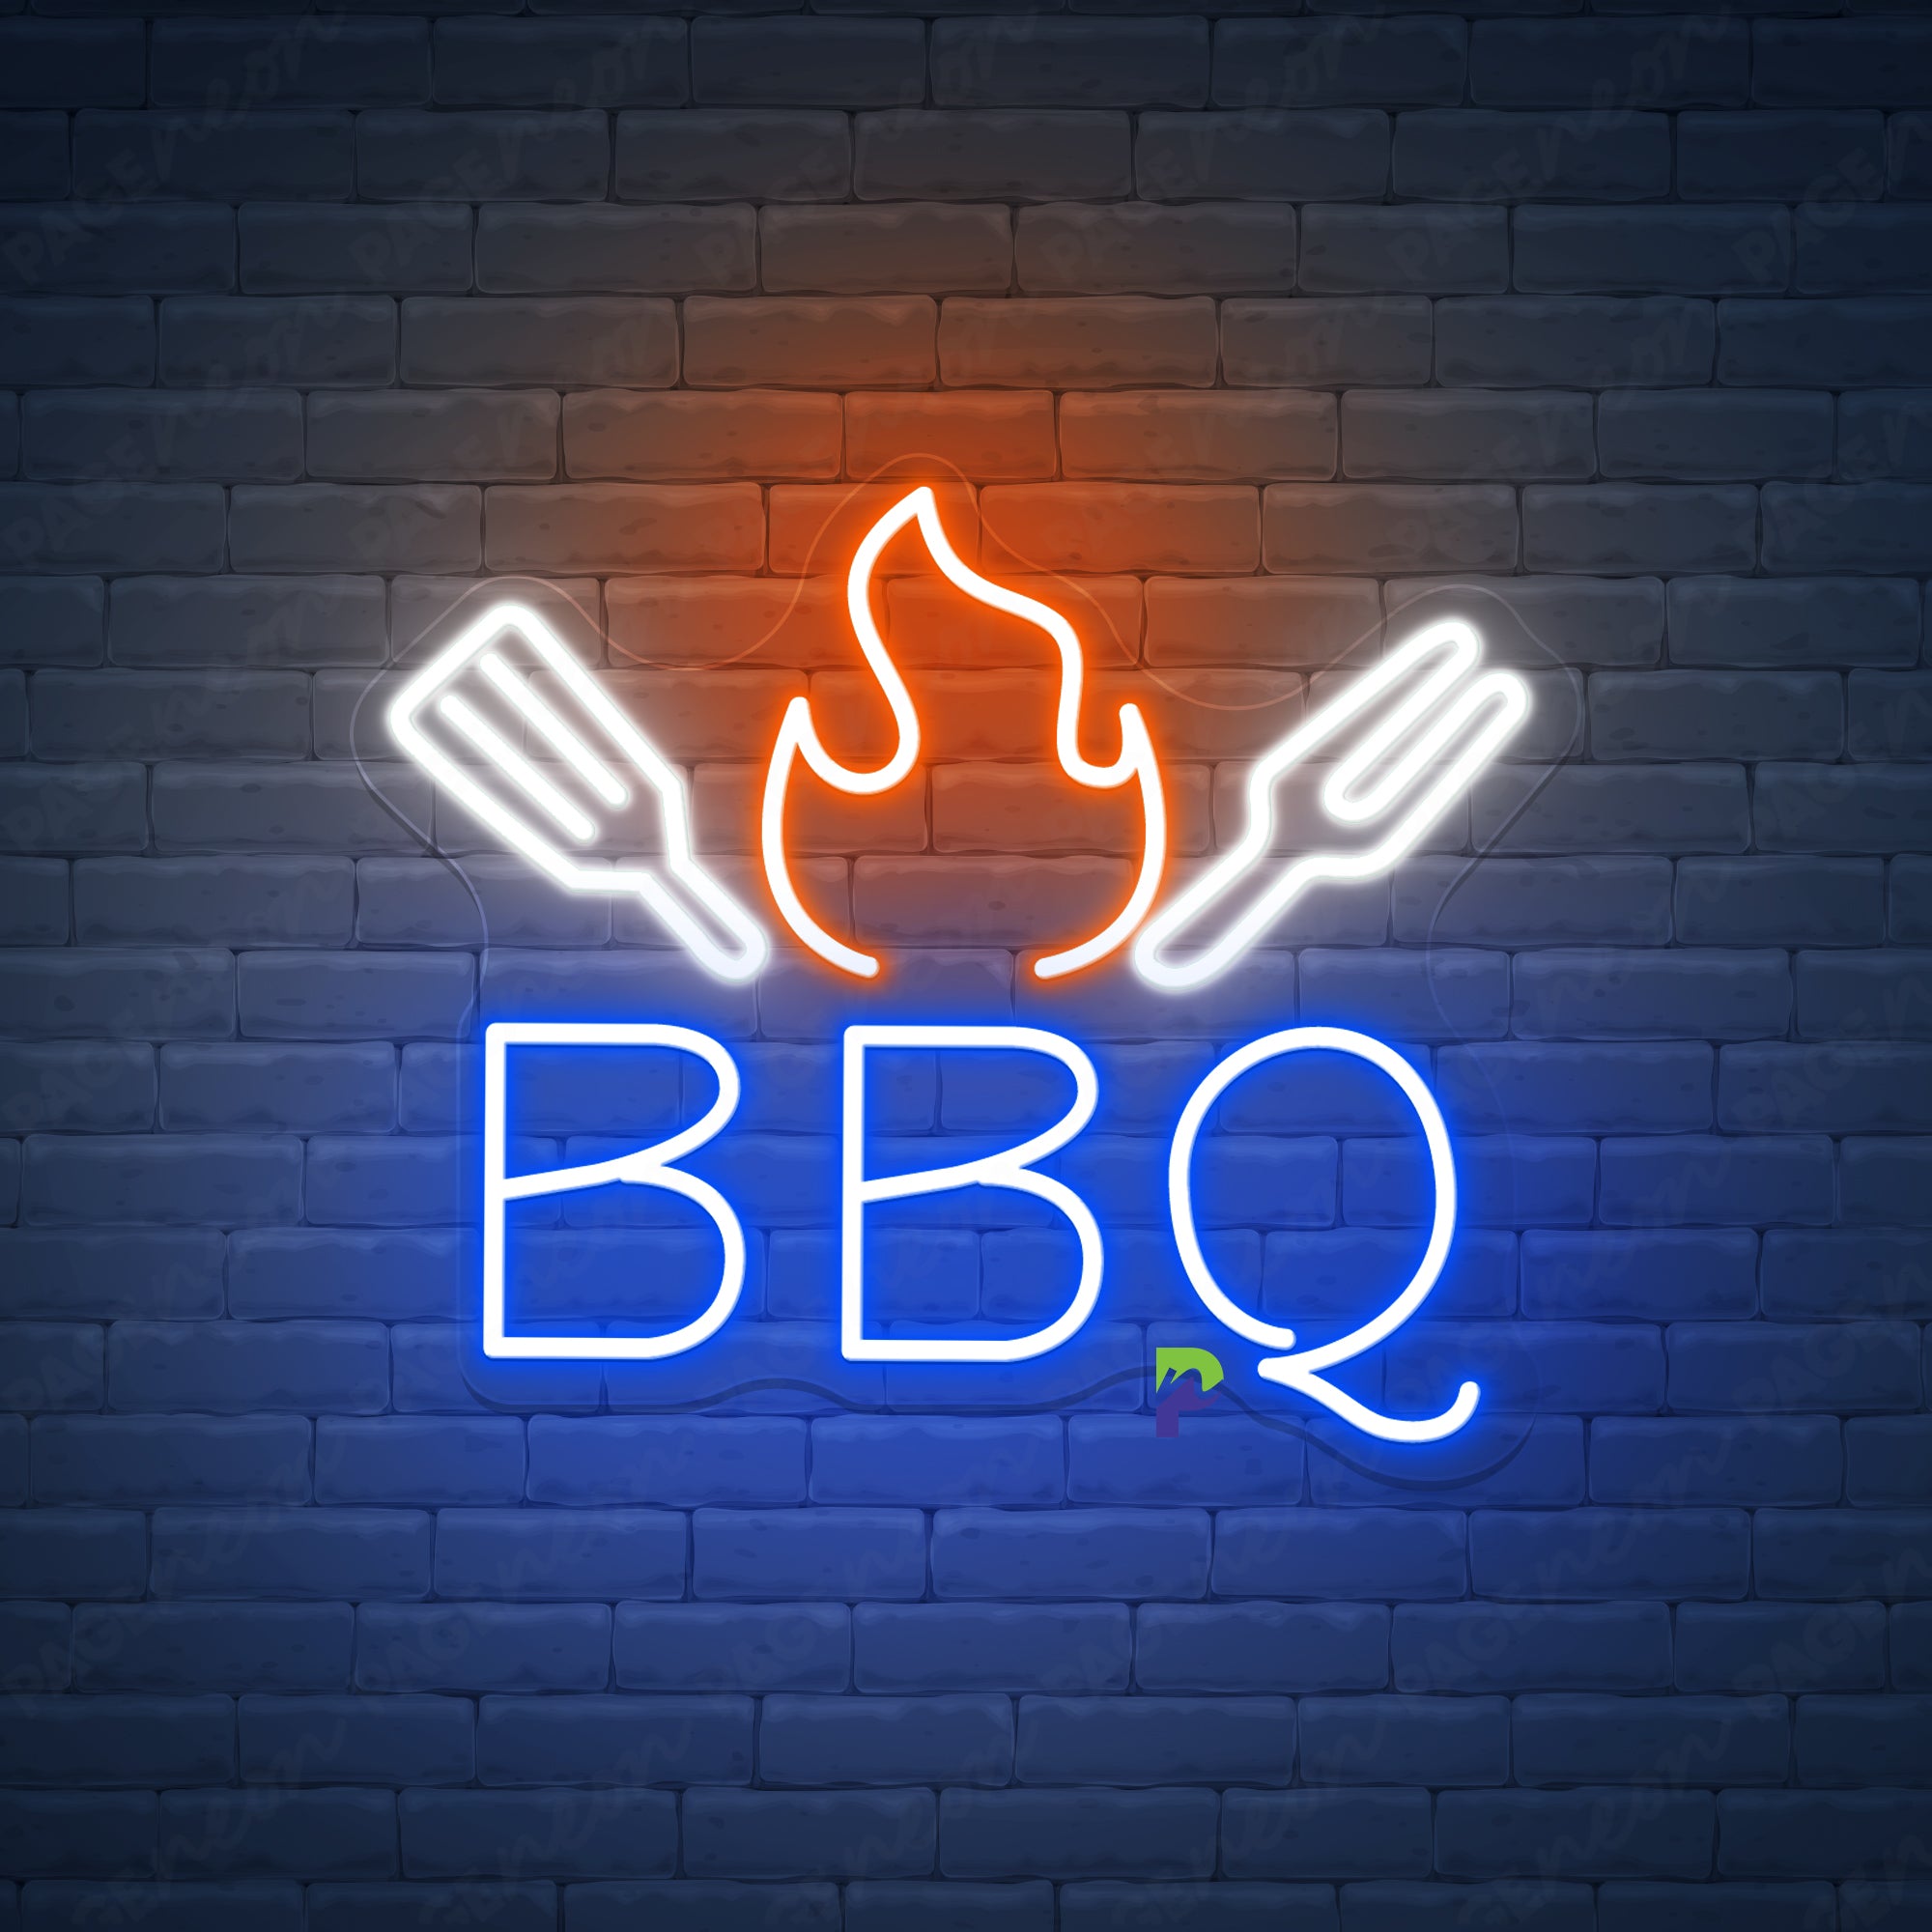 BBQ Neon Sign Best Restaurant Led Light